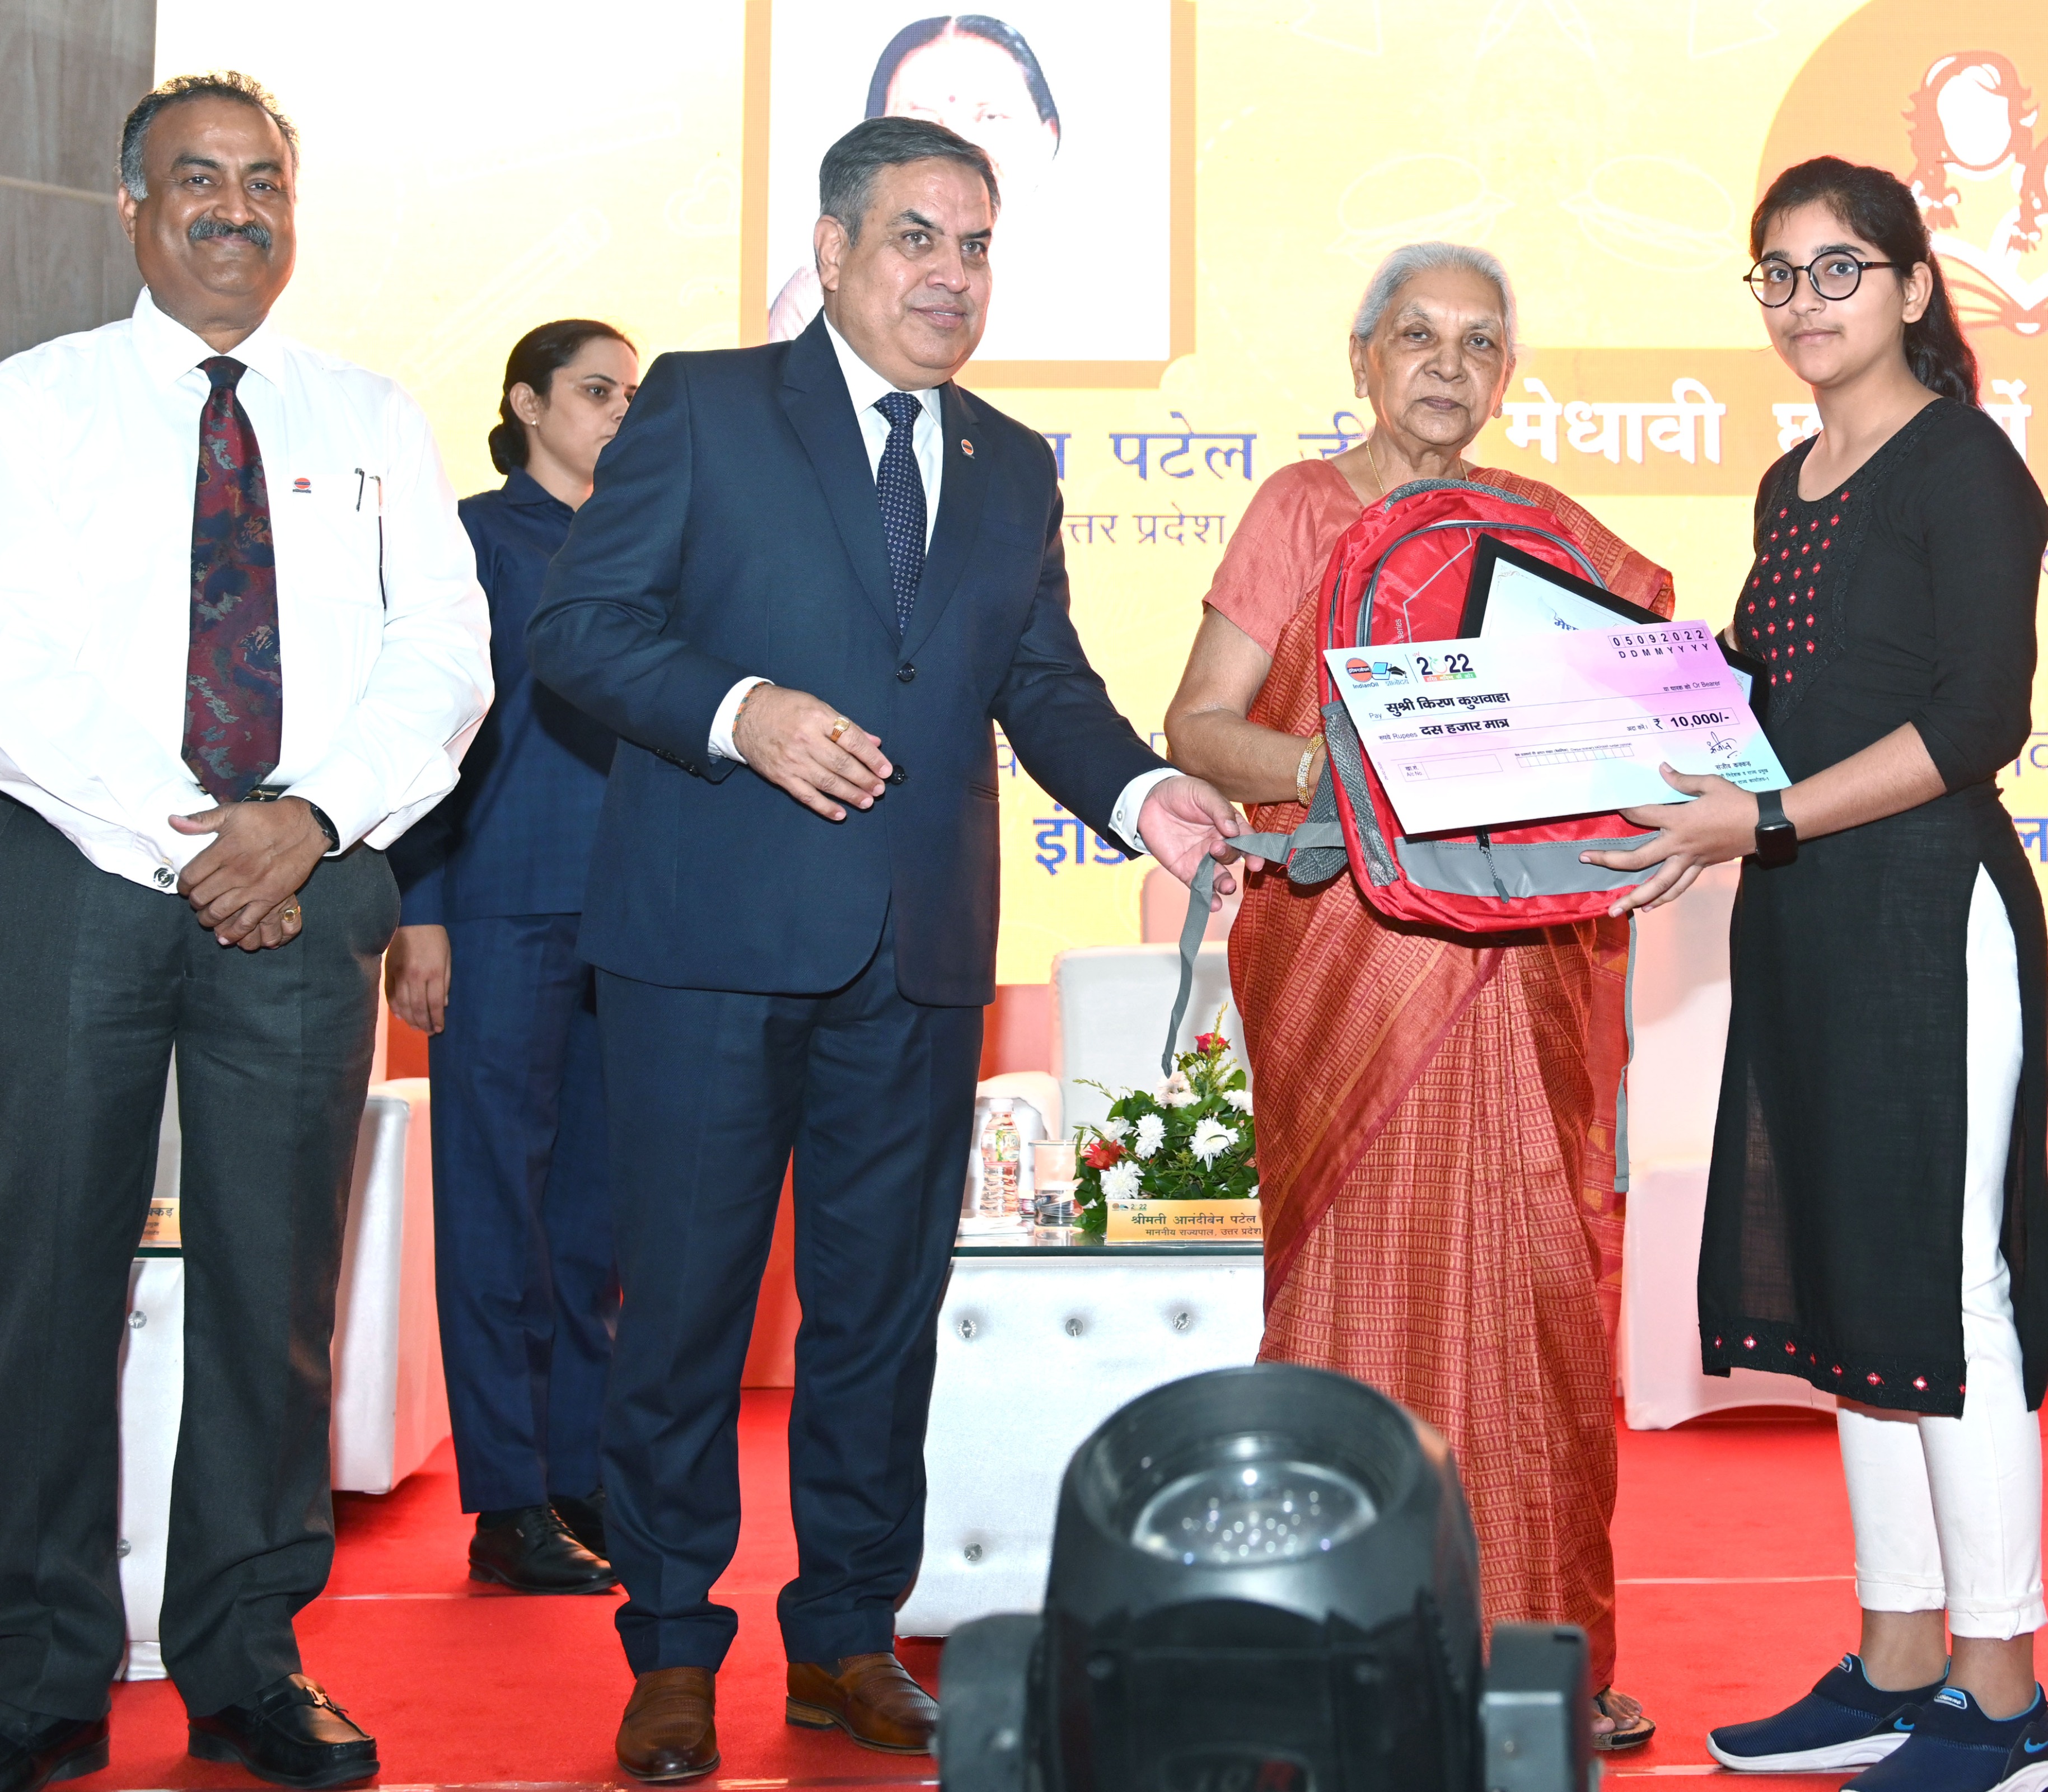 राज्यपाल श्रीमती आंनदीबेन पटेल ने शिक्षक दिवस पर प्रदेश में सर्वाधिक अंक प्राप्त 10वीं की छात्राओं को छात्रवृत्ति दी